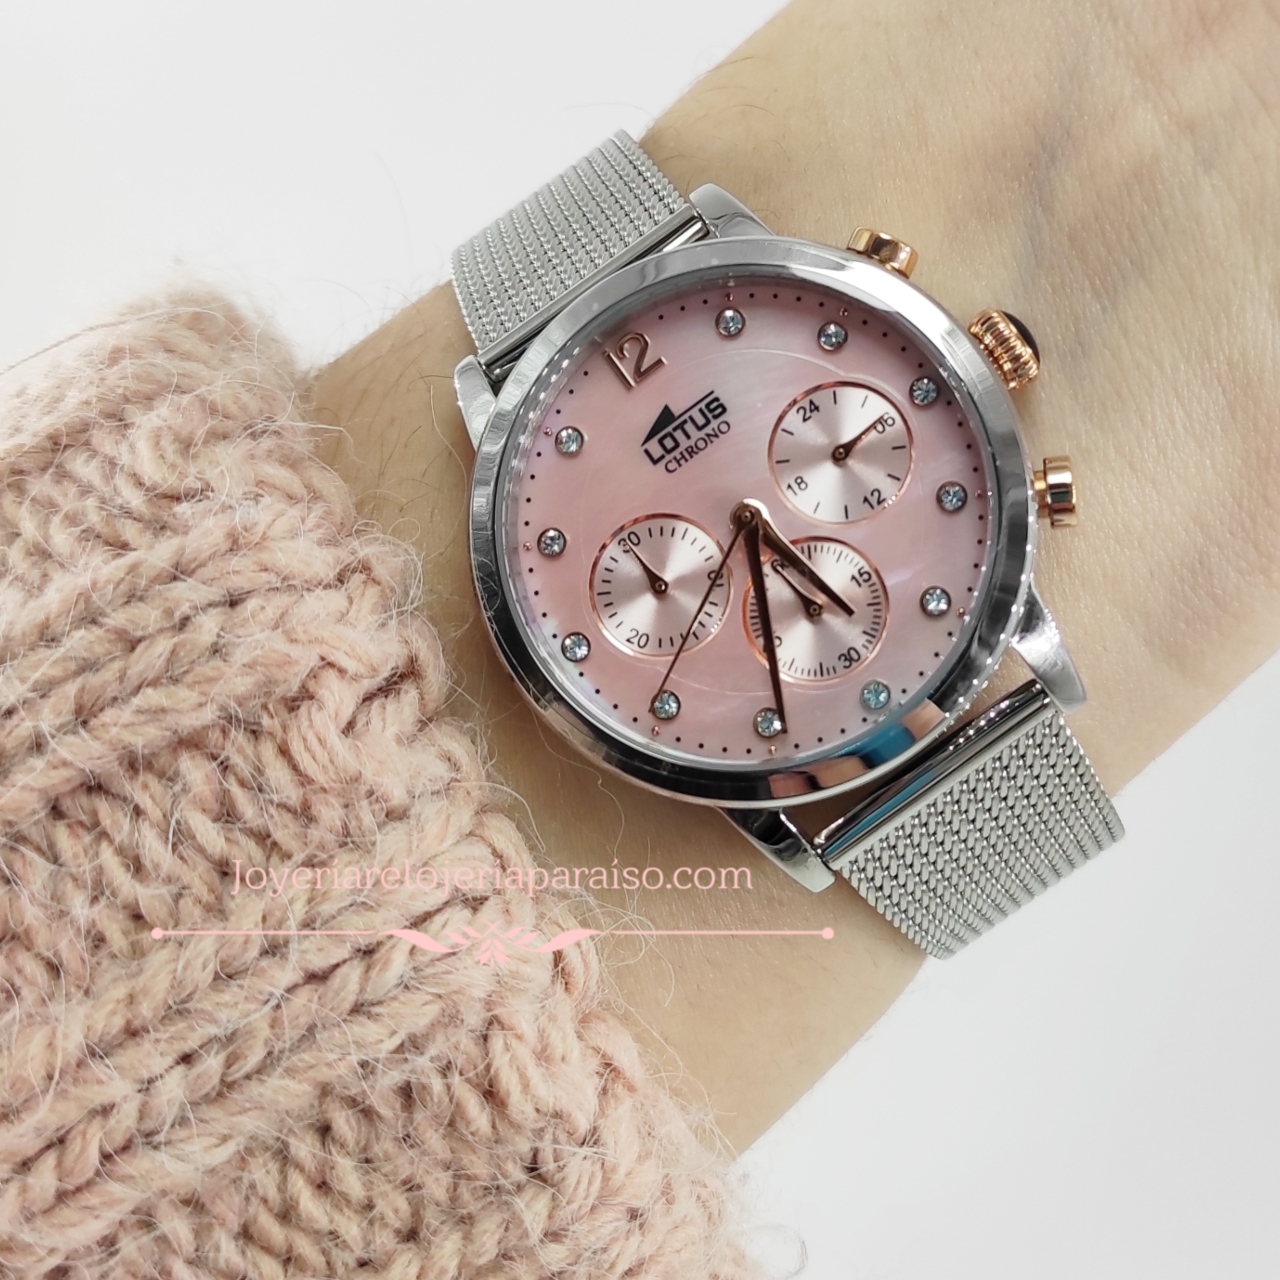 Reloj Mujer Rosa - LOTUS